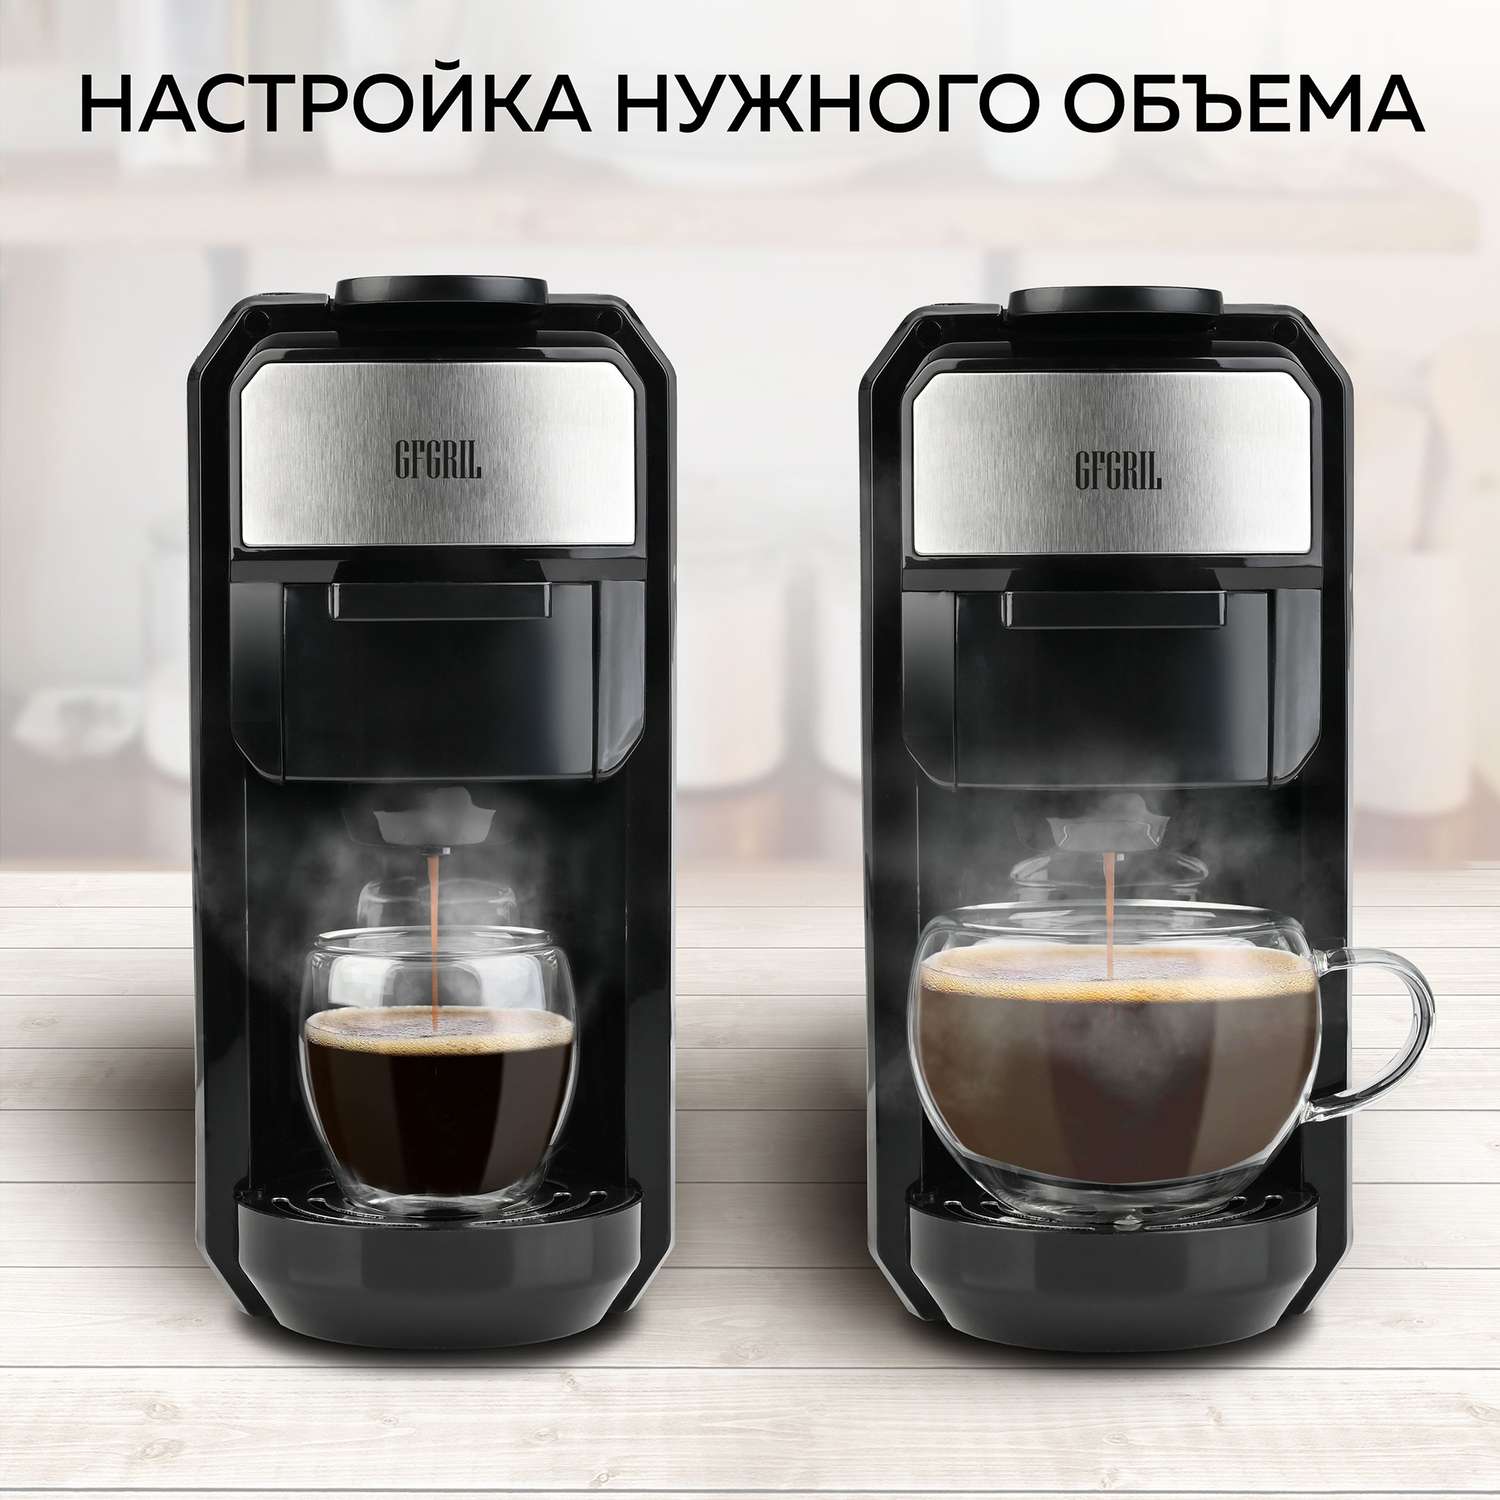 Кофеварка GFGRIL Мультикапсульная 3 в 1 GFC-C300 для молотого кофе и капсул типа Nespresso и Dolce Gusto - фото 6